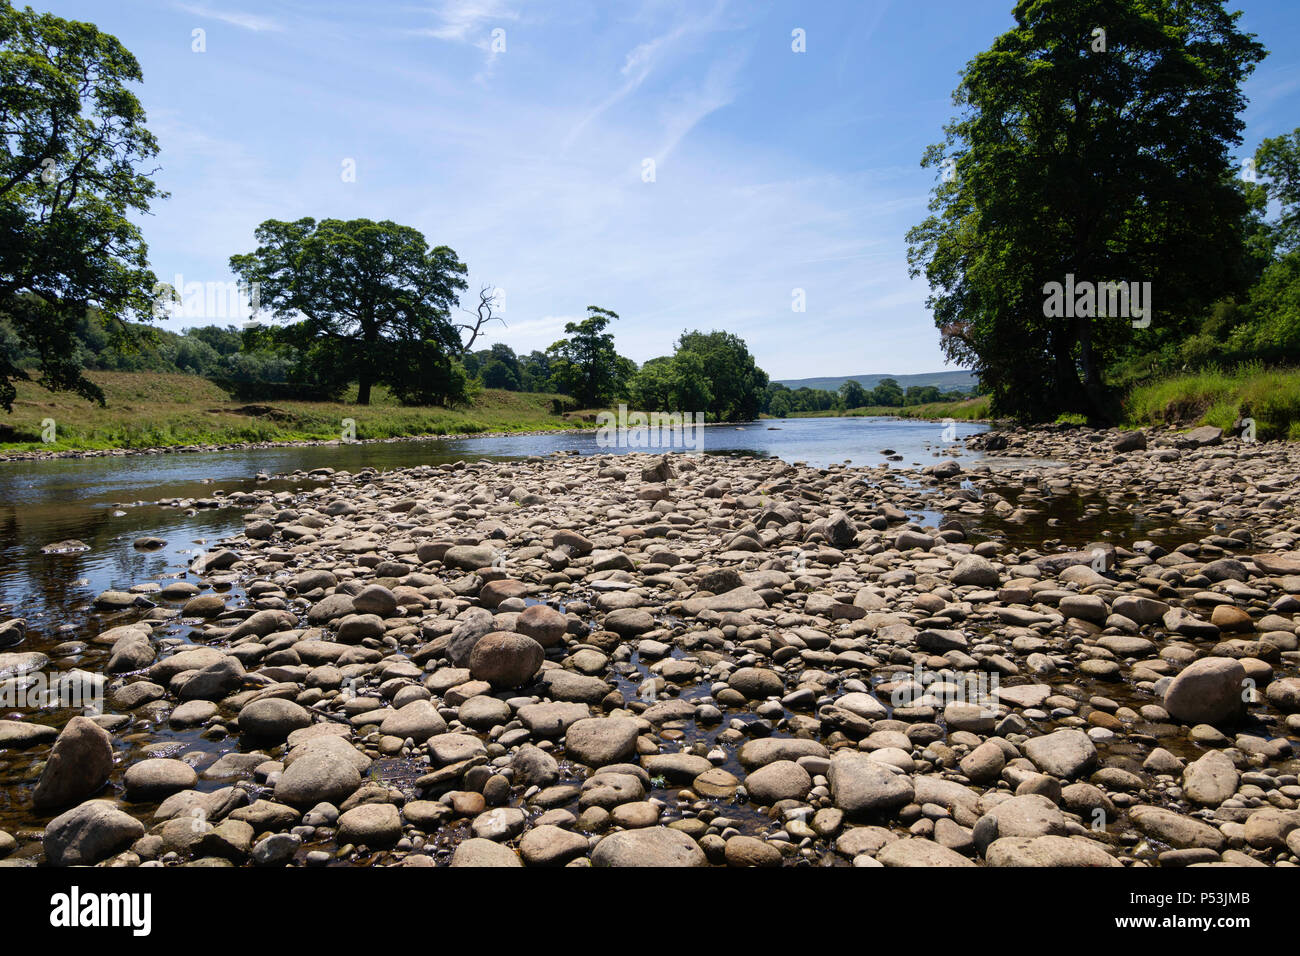 Une étendue de rochers et de pierres bordent les rives de la rivière Wharfe à Bolton Abbey Estate, Skipton, North Yorkshire, Angleterre, Royaume-Uni. Banque D'Images